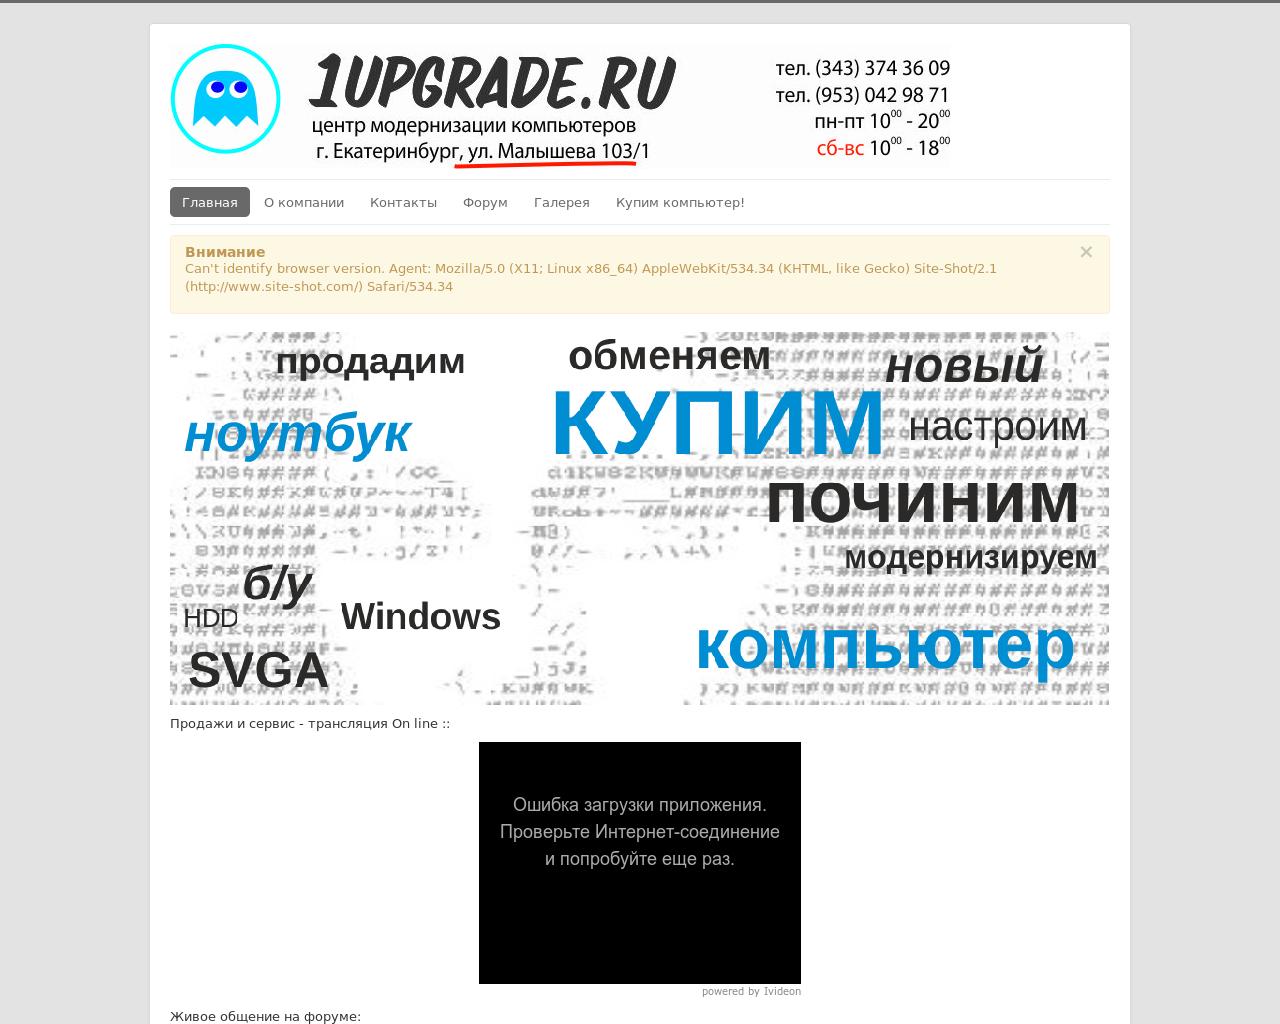 Изображение сайта 1upgrade.ru в разрешении 1280x1024